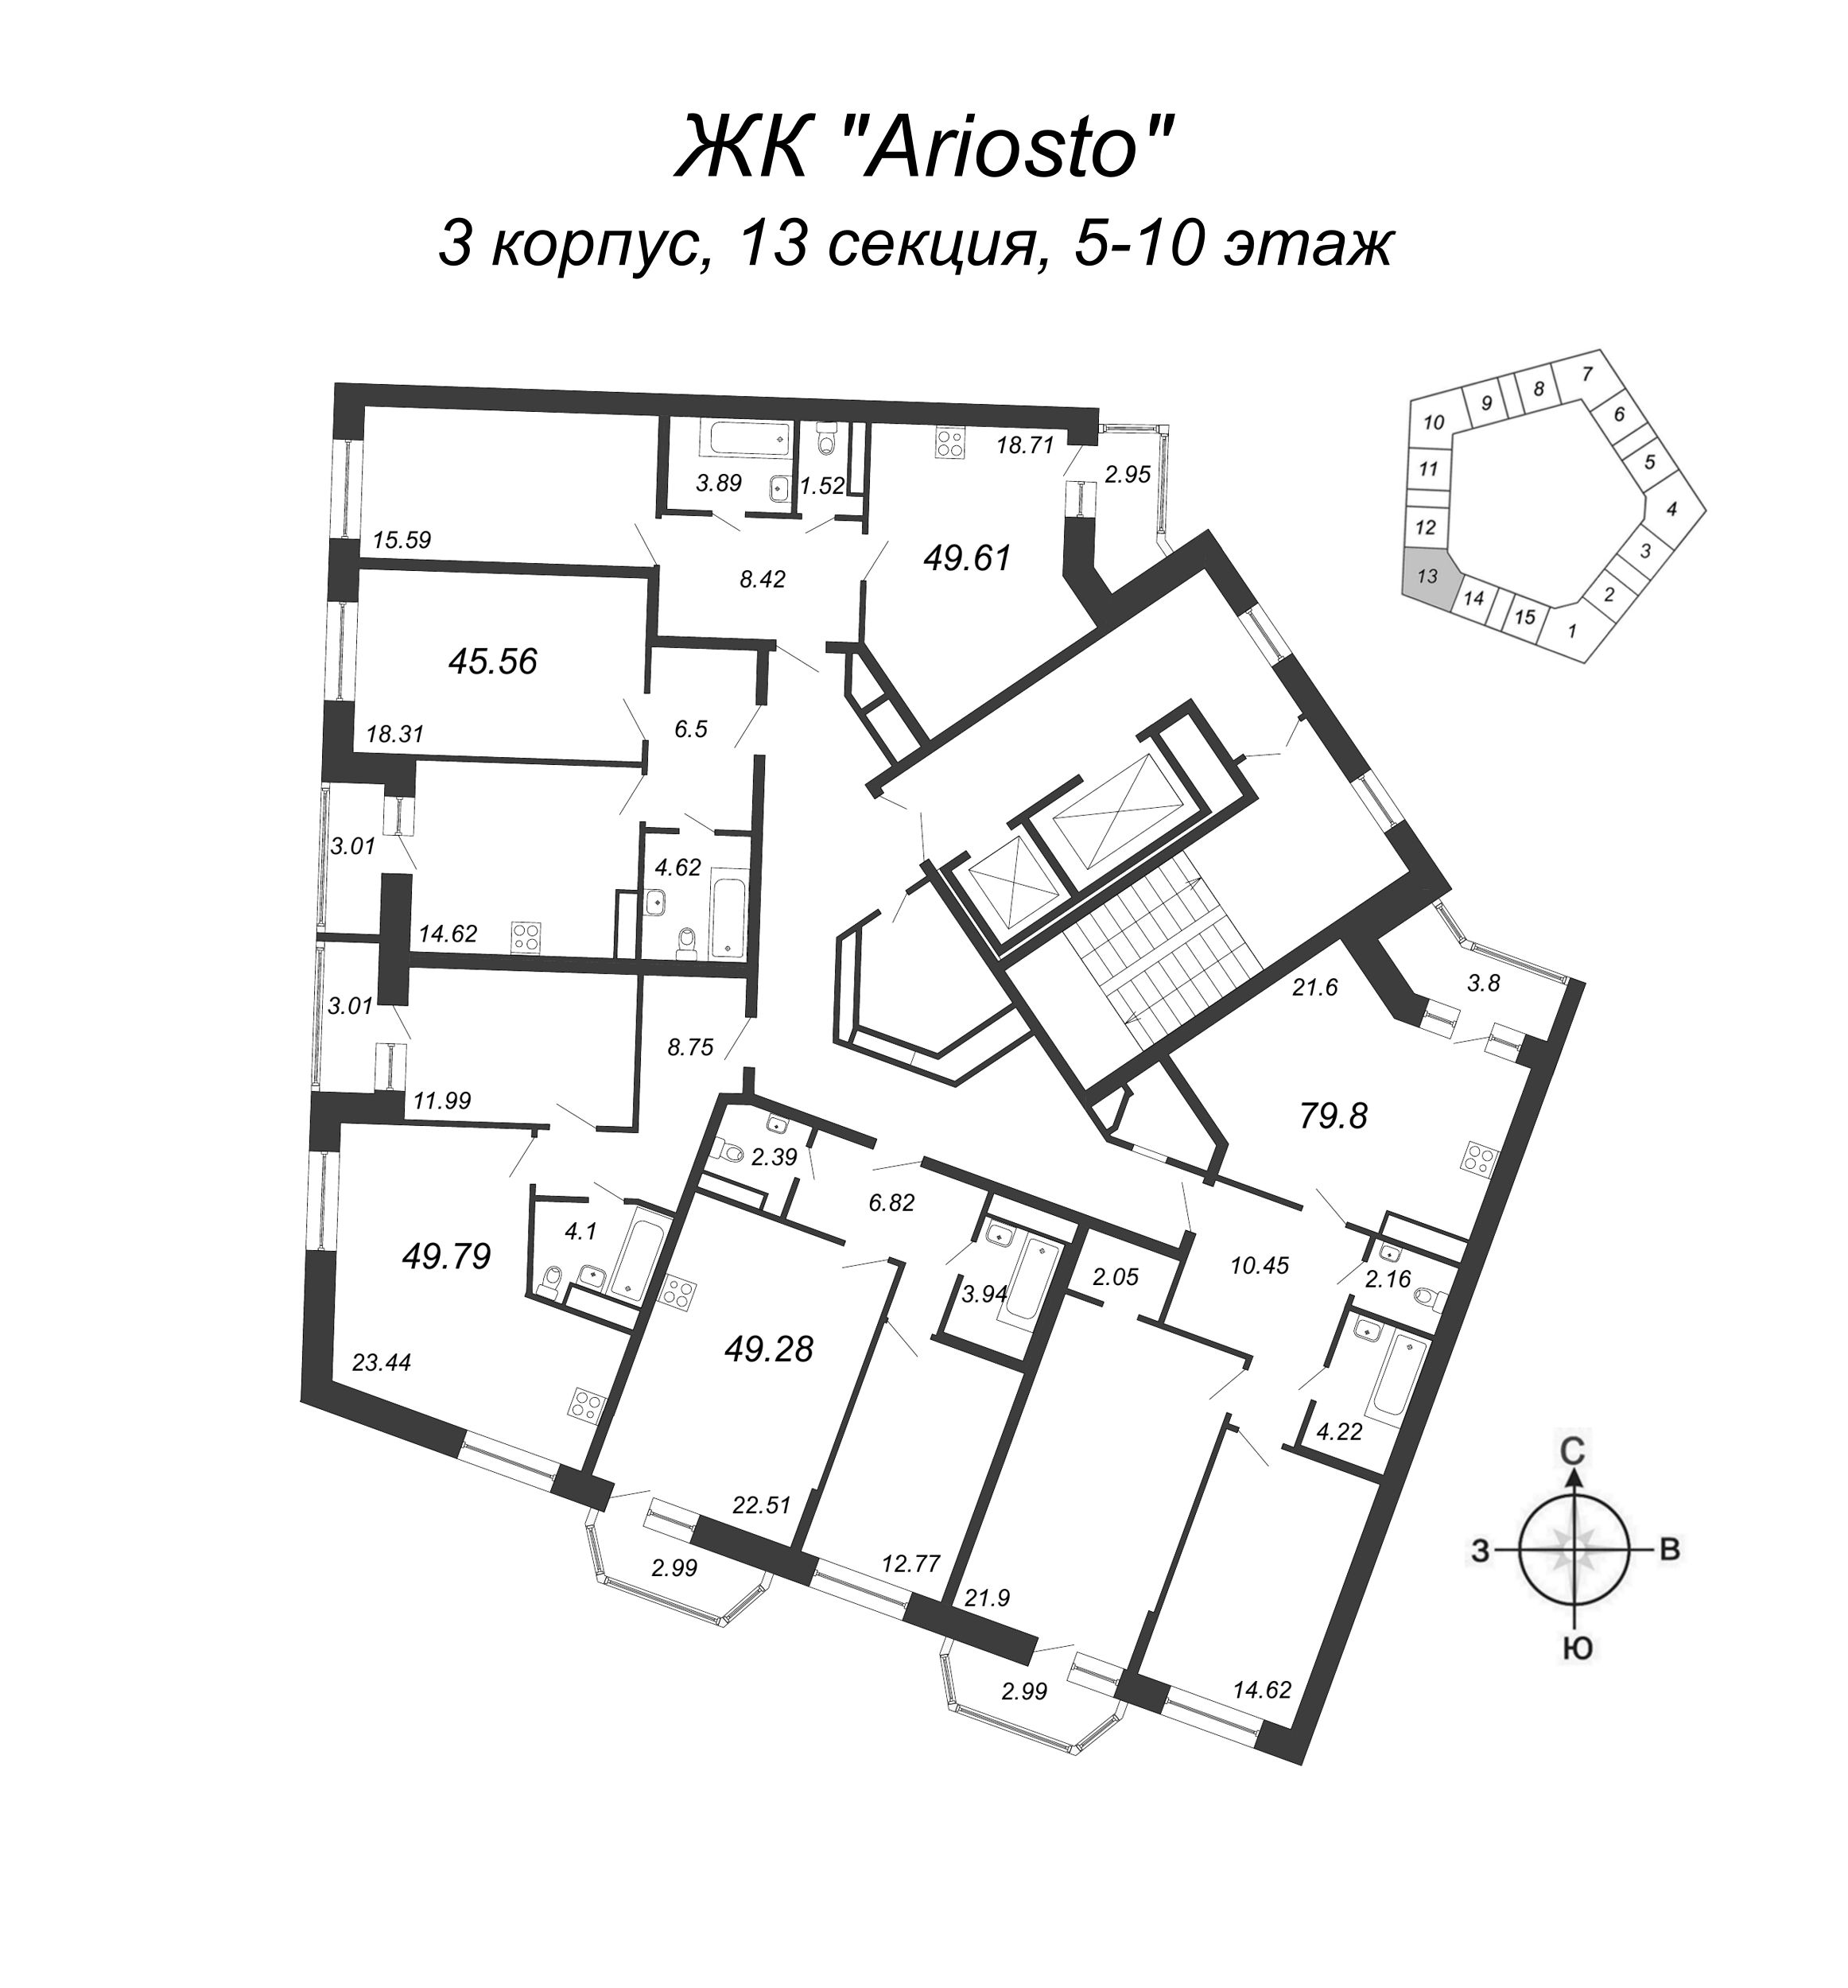 3-комнатная (Евро) квартира, 79.8 м² в ЖК "Ariosto" - планировка этажа